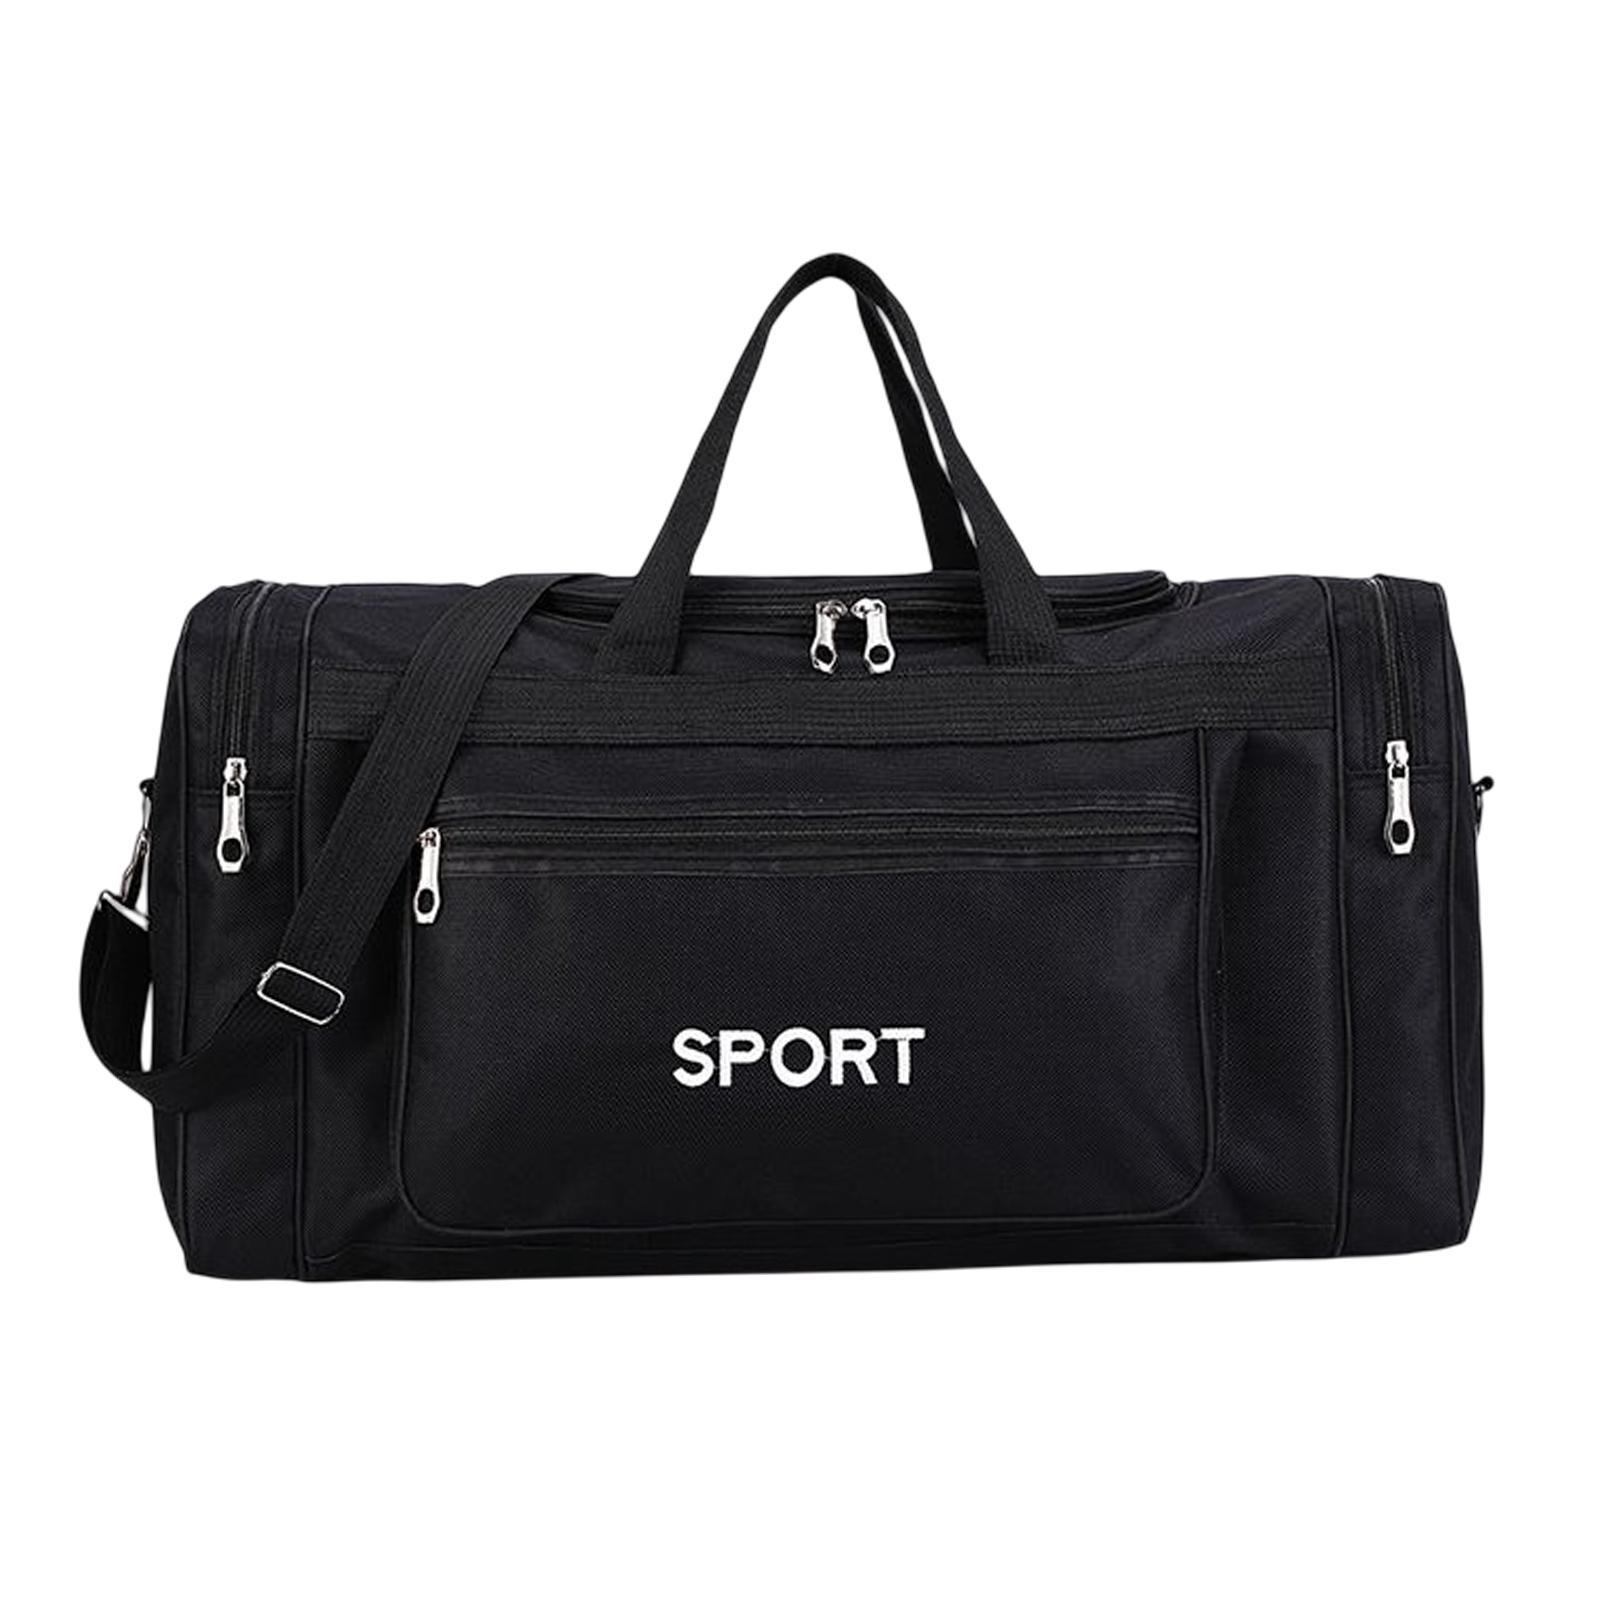 Gym Bag Adjustable Strap Multi Pocket Large for Training Hunting Camping